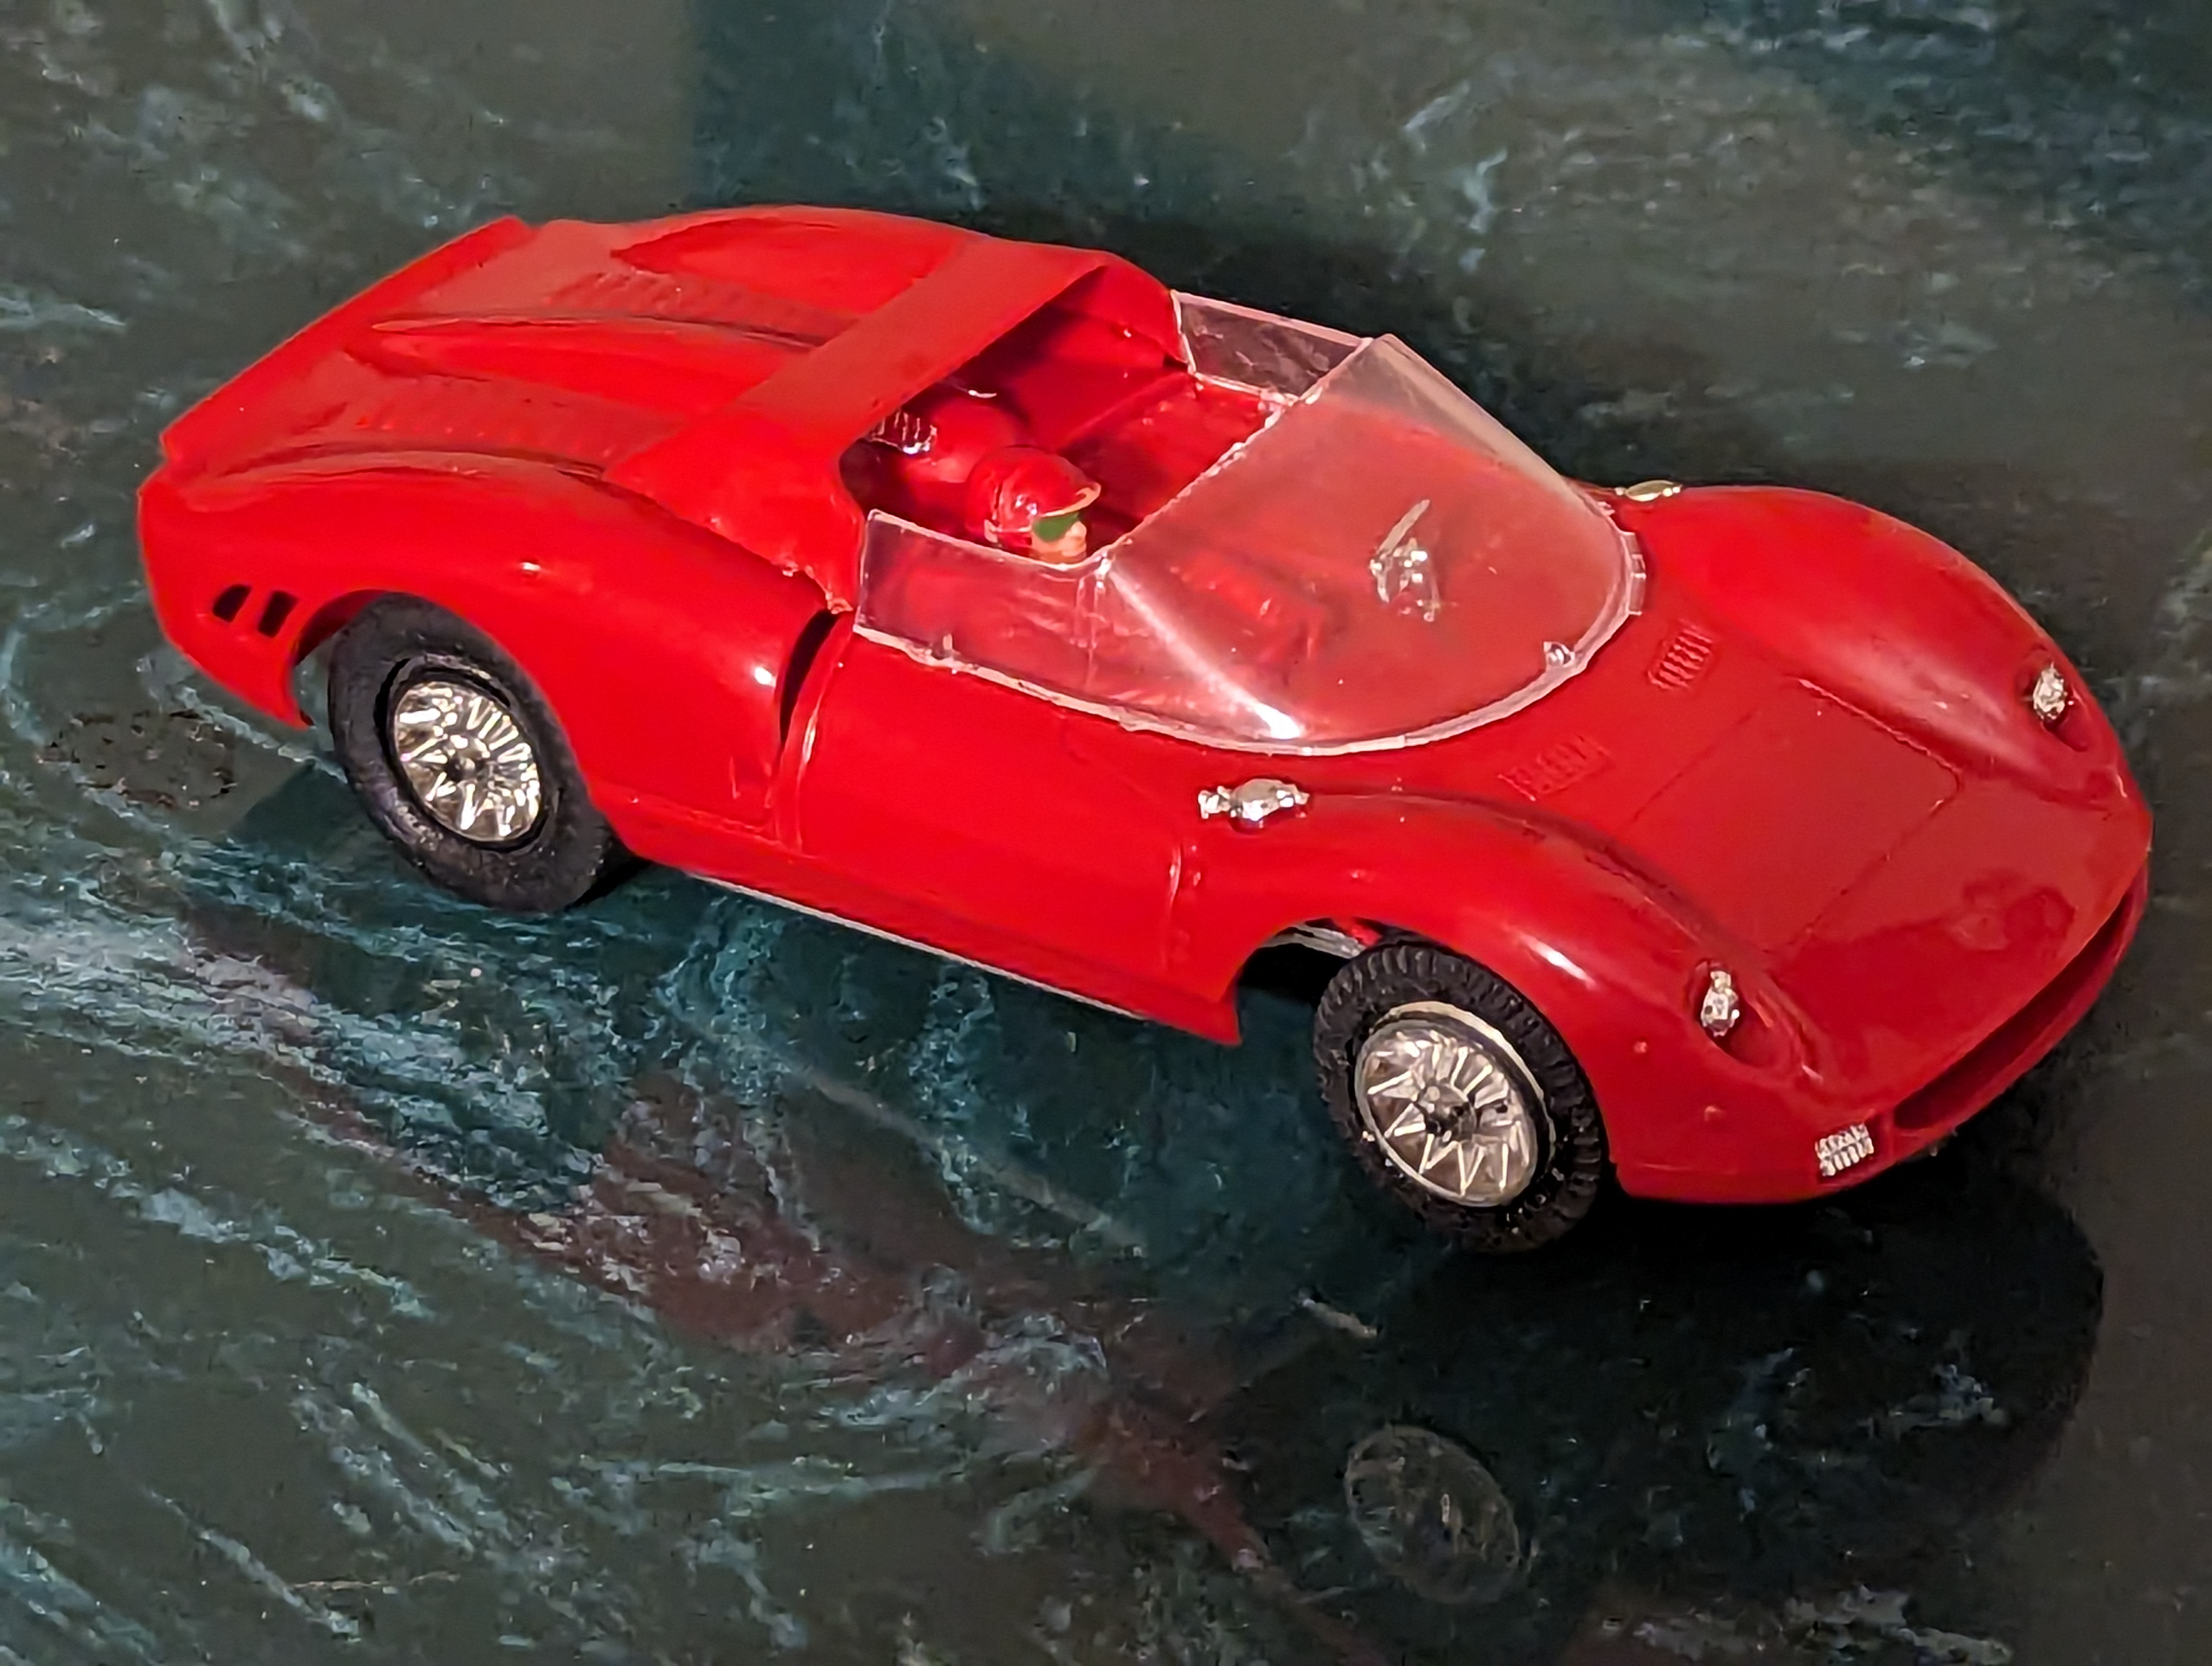 1965 Ferrari 365 P2 - 1st Issue